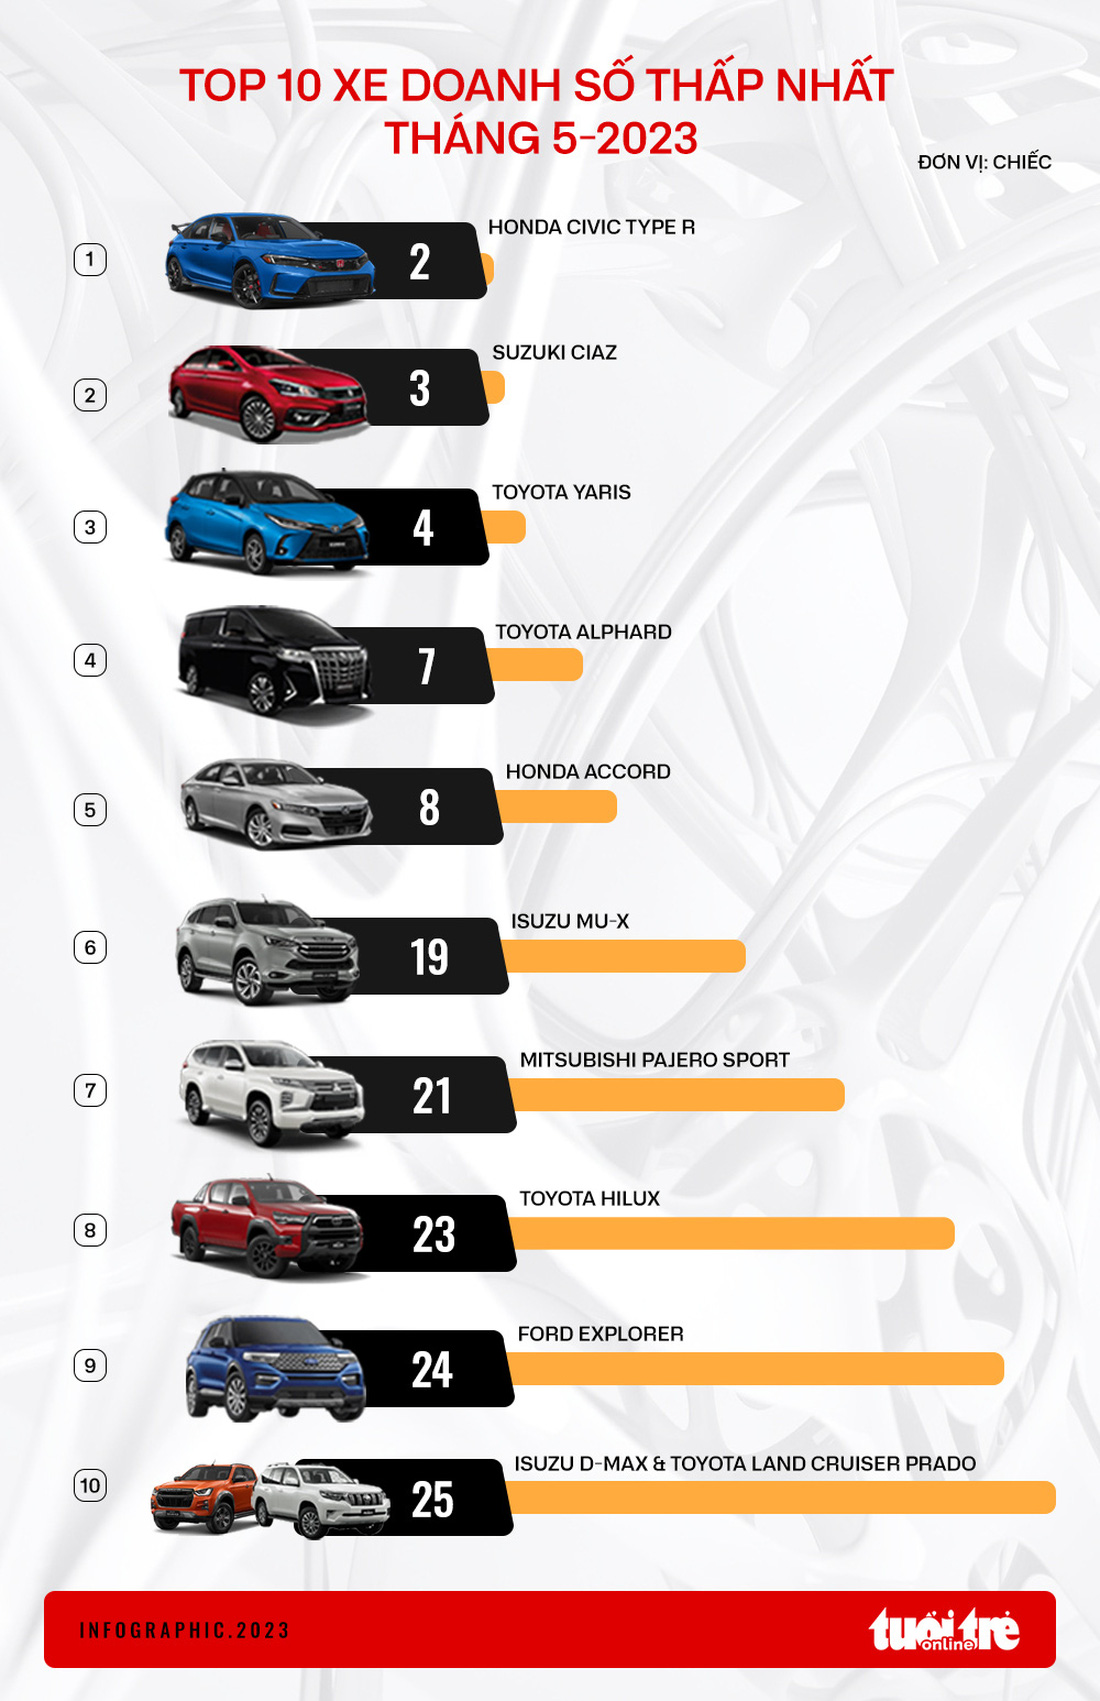 10 ô tô bán ít nhất tháng 5: Honda Civic Type R chỉ có 2 xe - Ảnh 1.